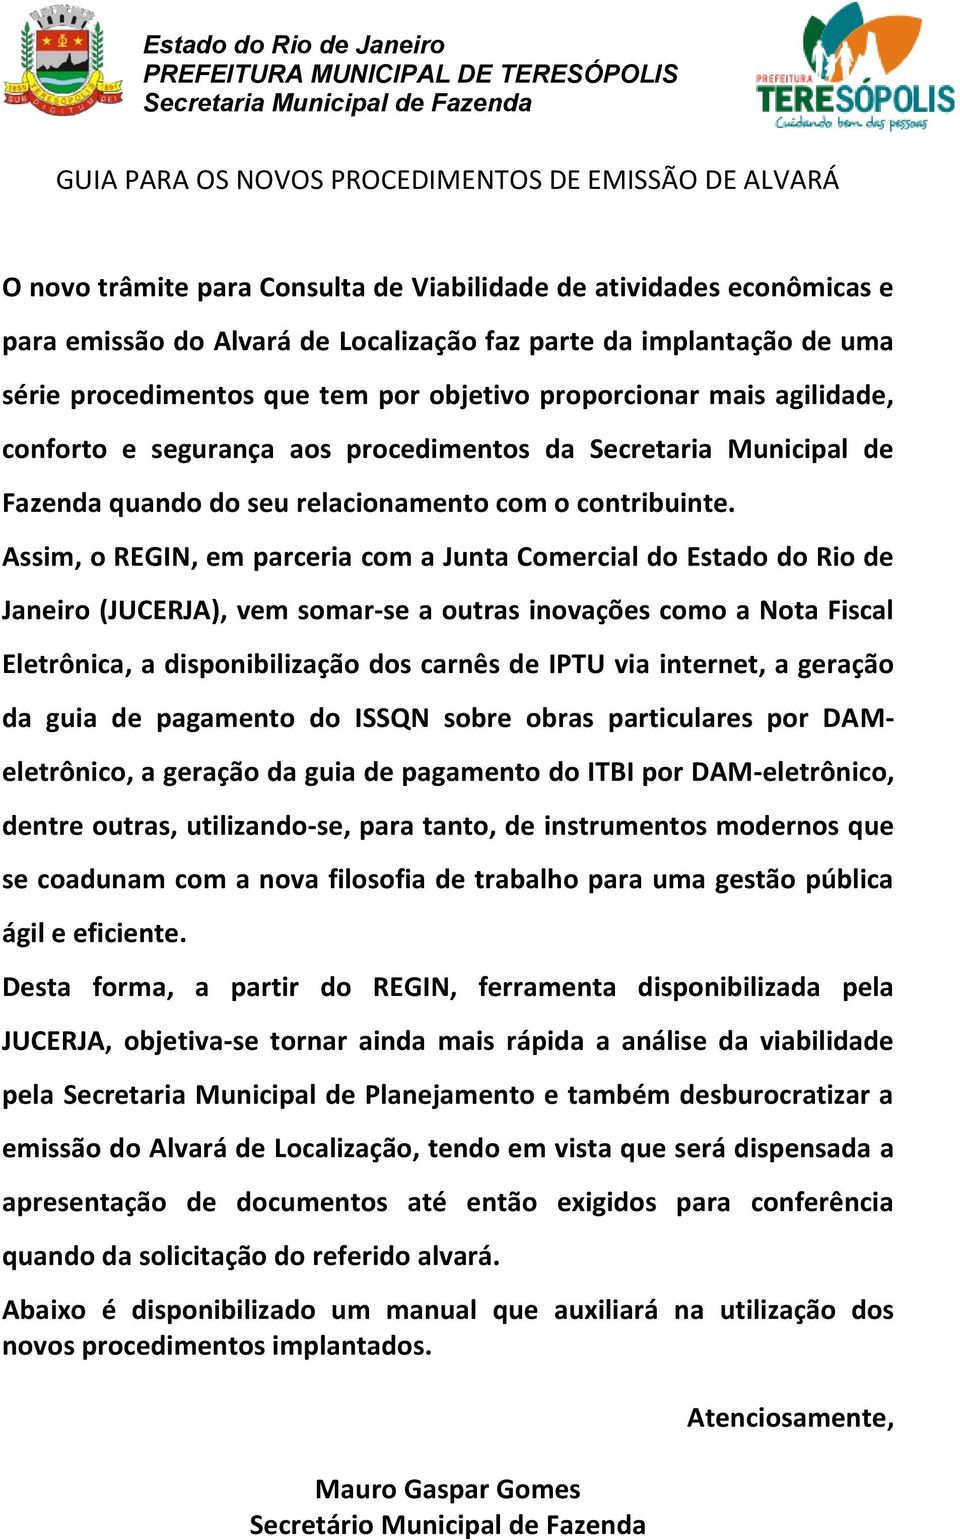 Assim, o REGIN, em parceria com a Junta Comercial do Estado do Rio de Janeiro (JUCERJA), vem somar-se a outras inovações como a Nota Fiscal Eletrônica, a disponibilização dos carnês de IPTU via